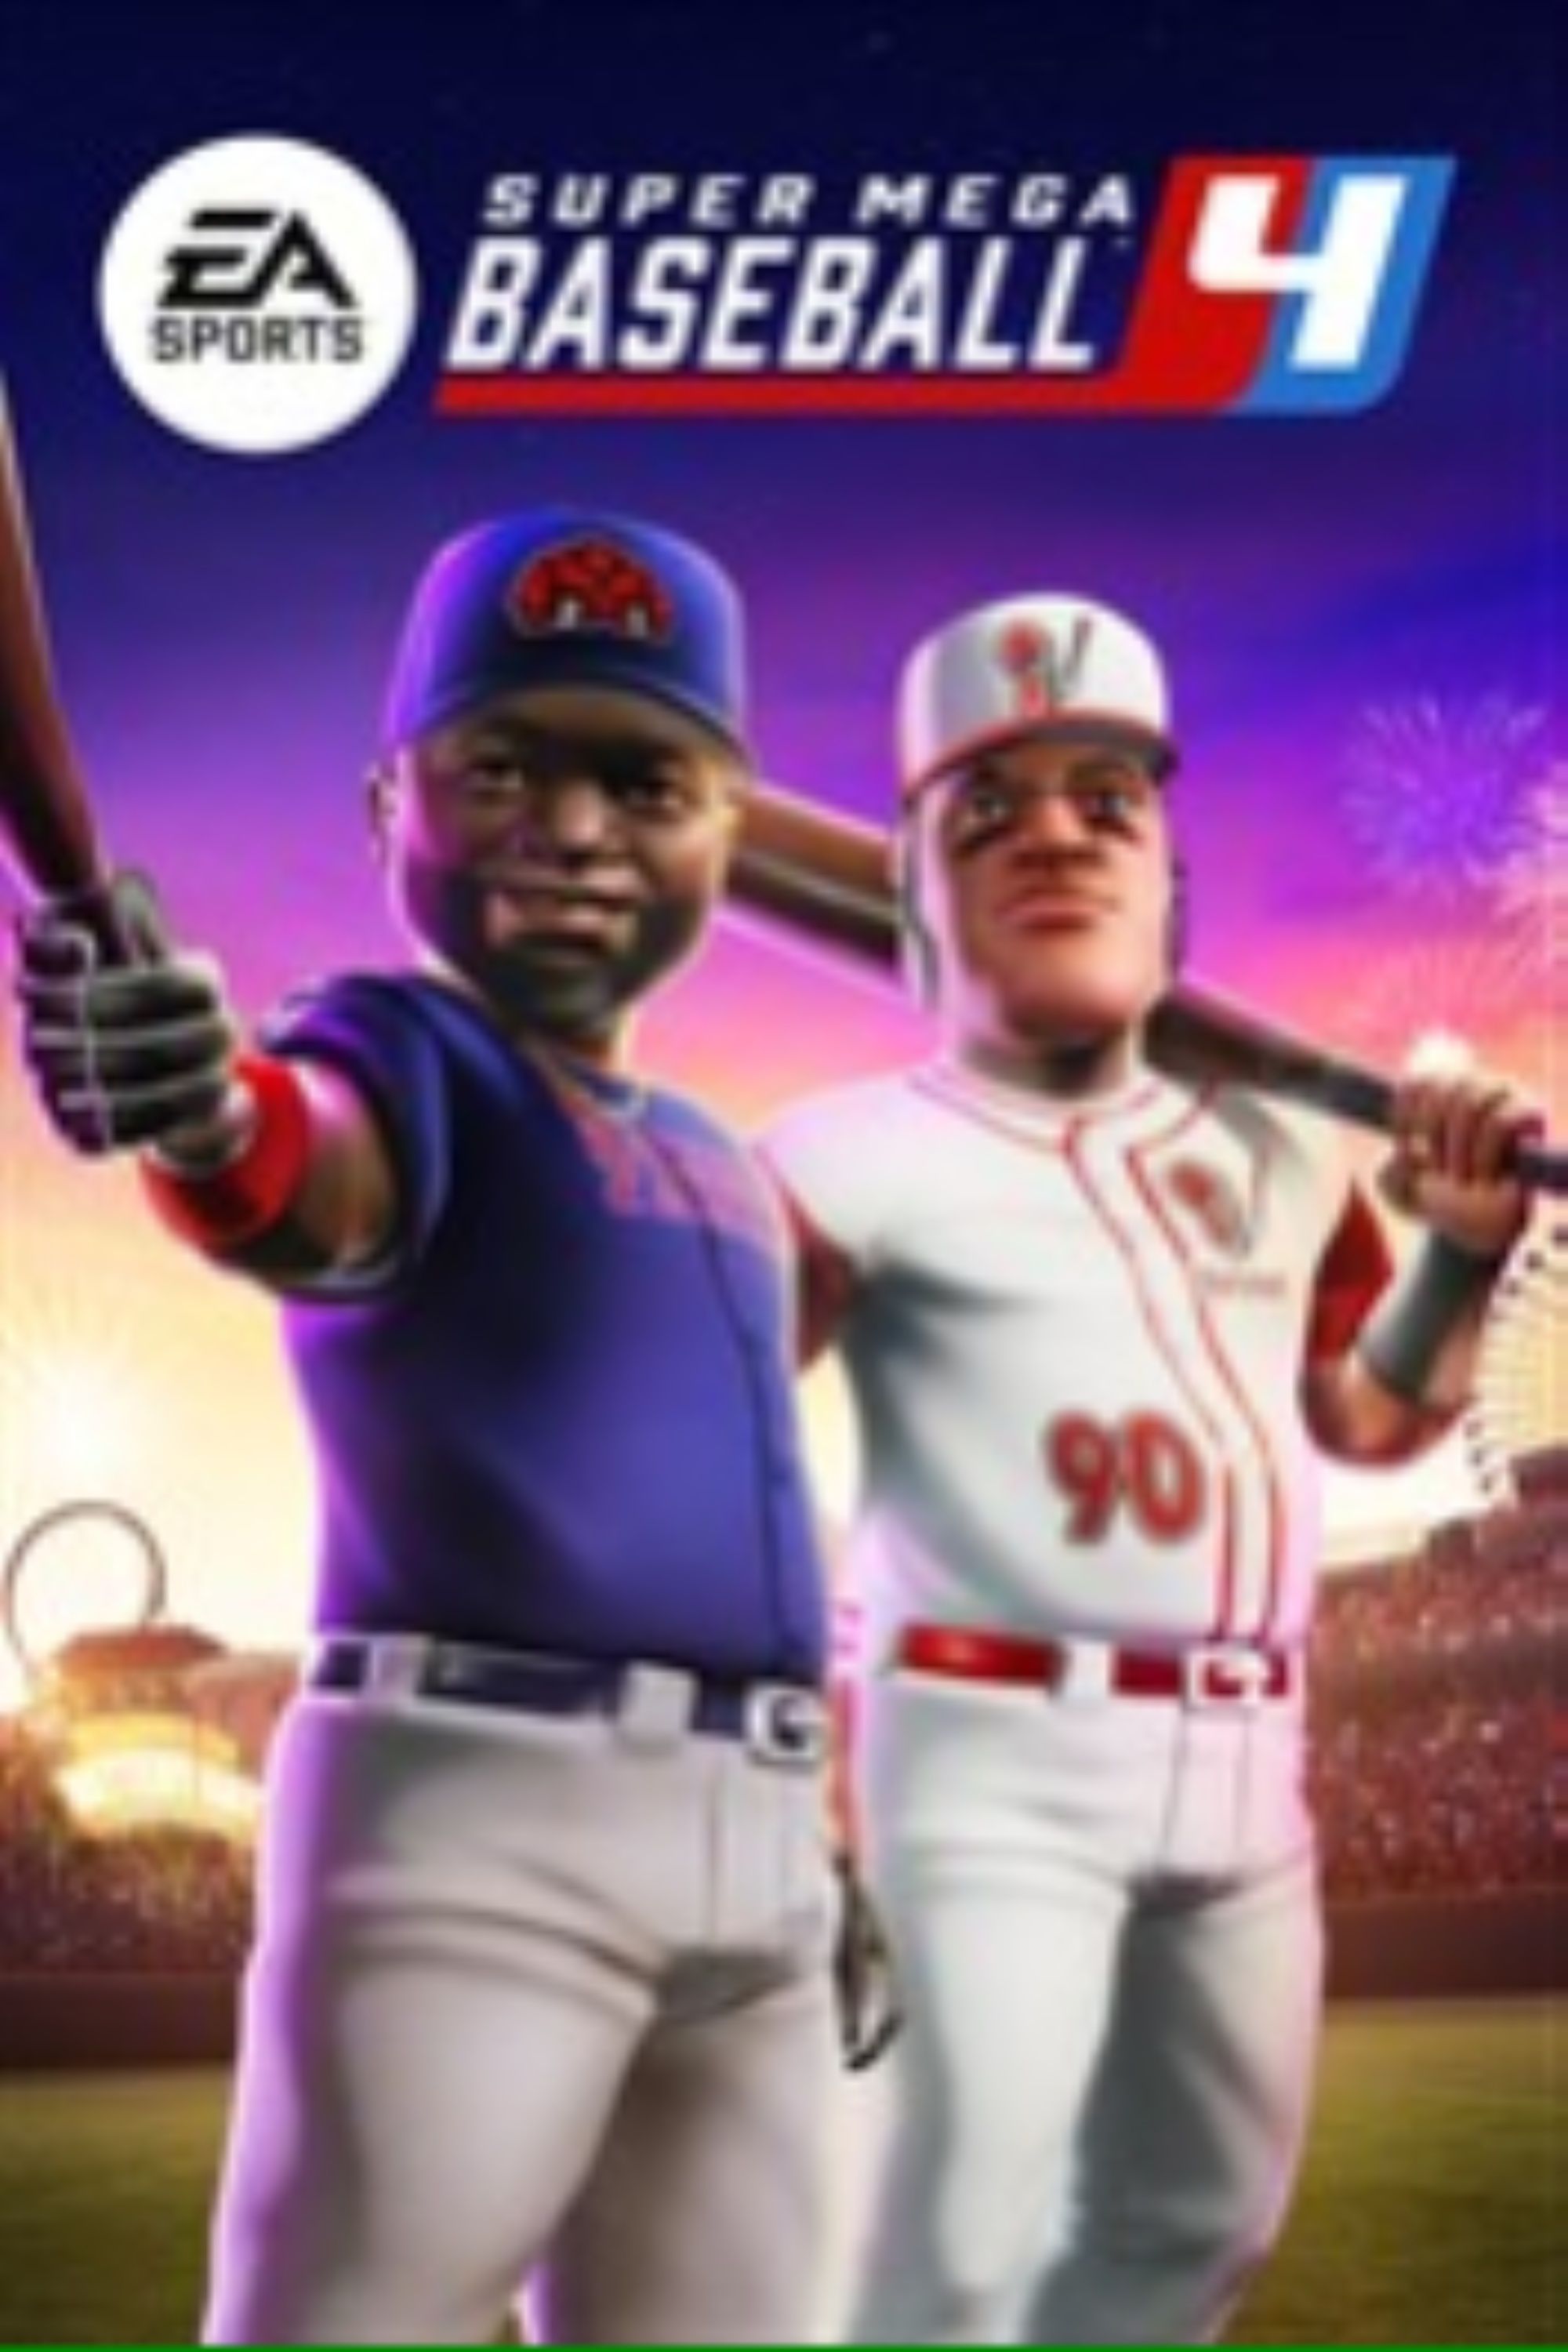 Super-Mega-Baseball 4